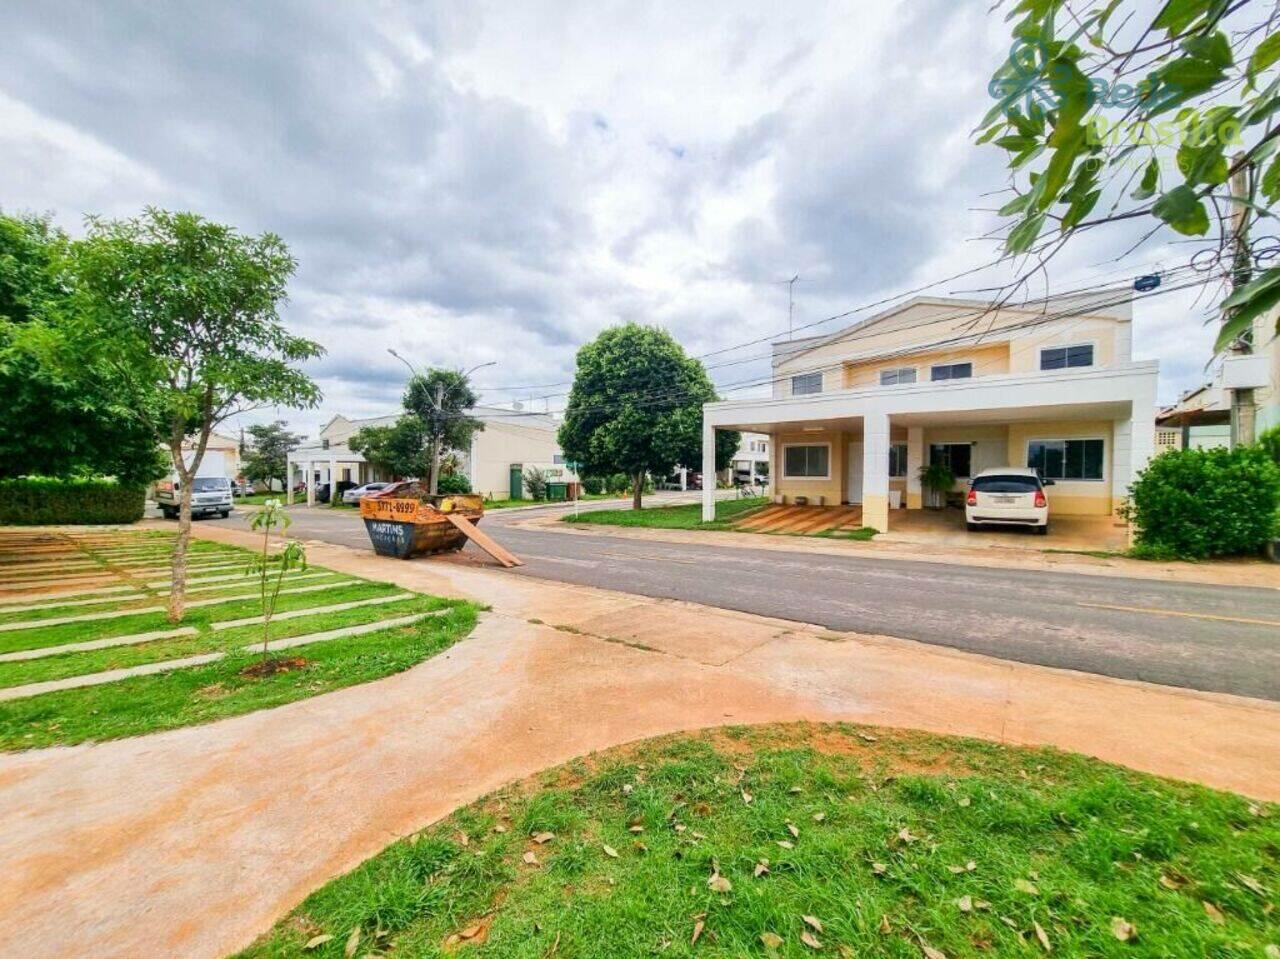 Casa Jardins Mangueiral(Jardim botânico), Brasília - DF